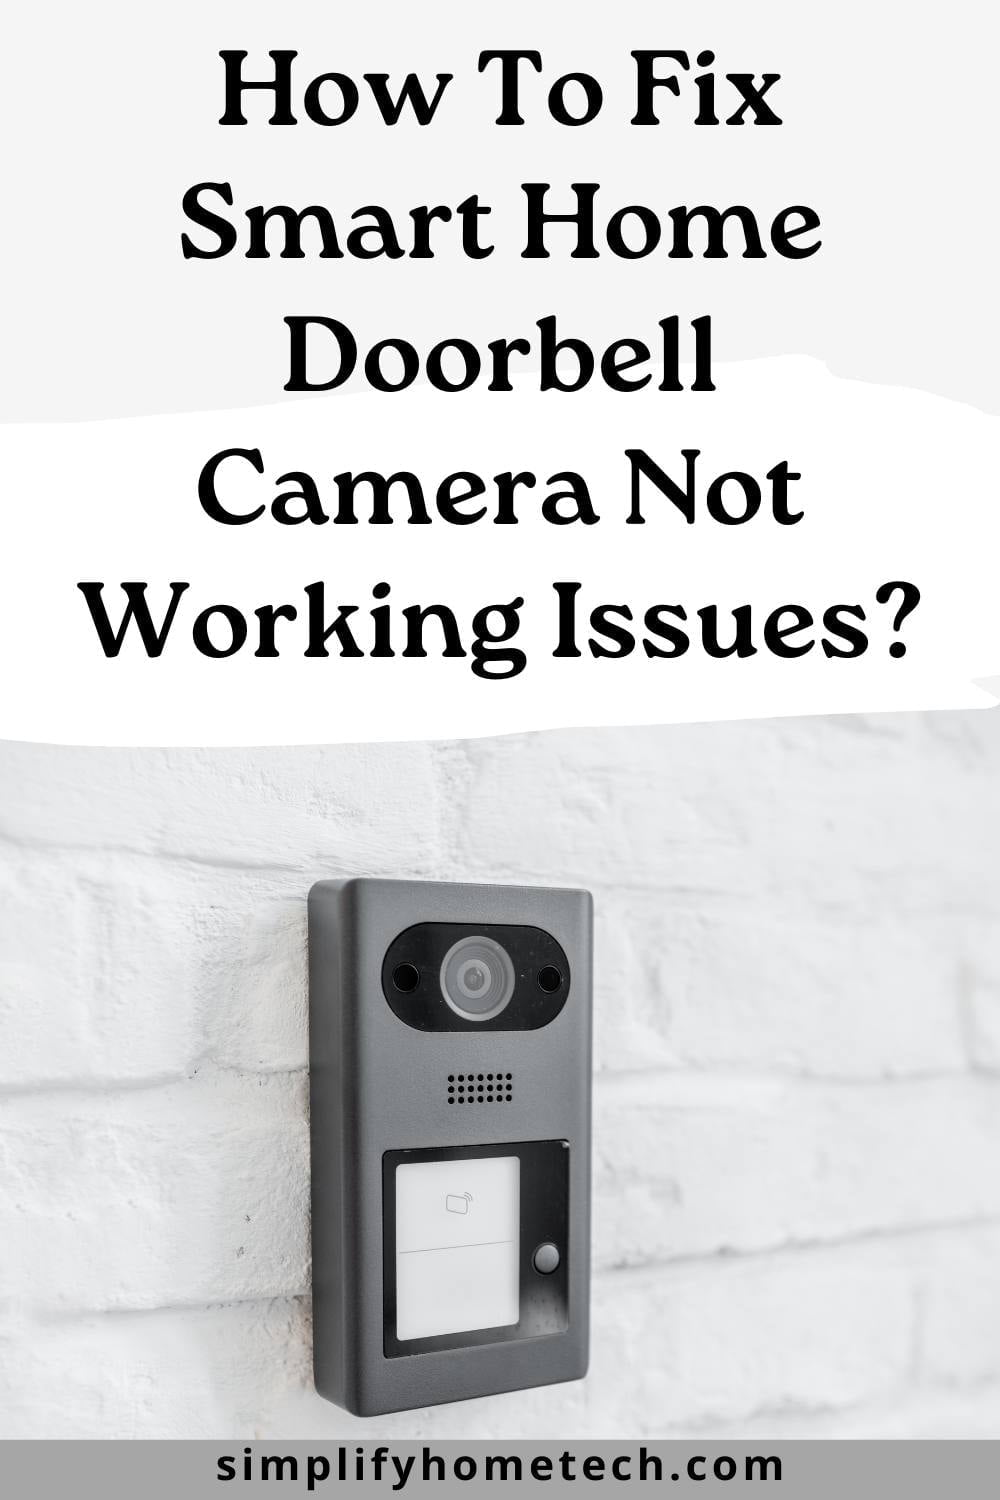 How To Fix Smart Home Doorbell Camera Not Working